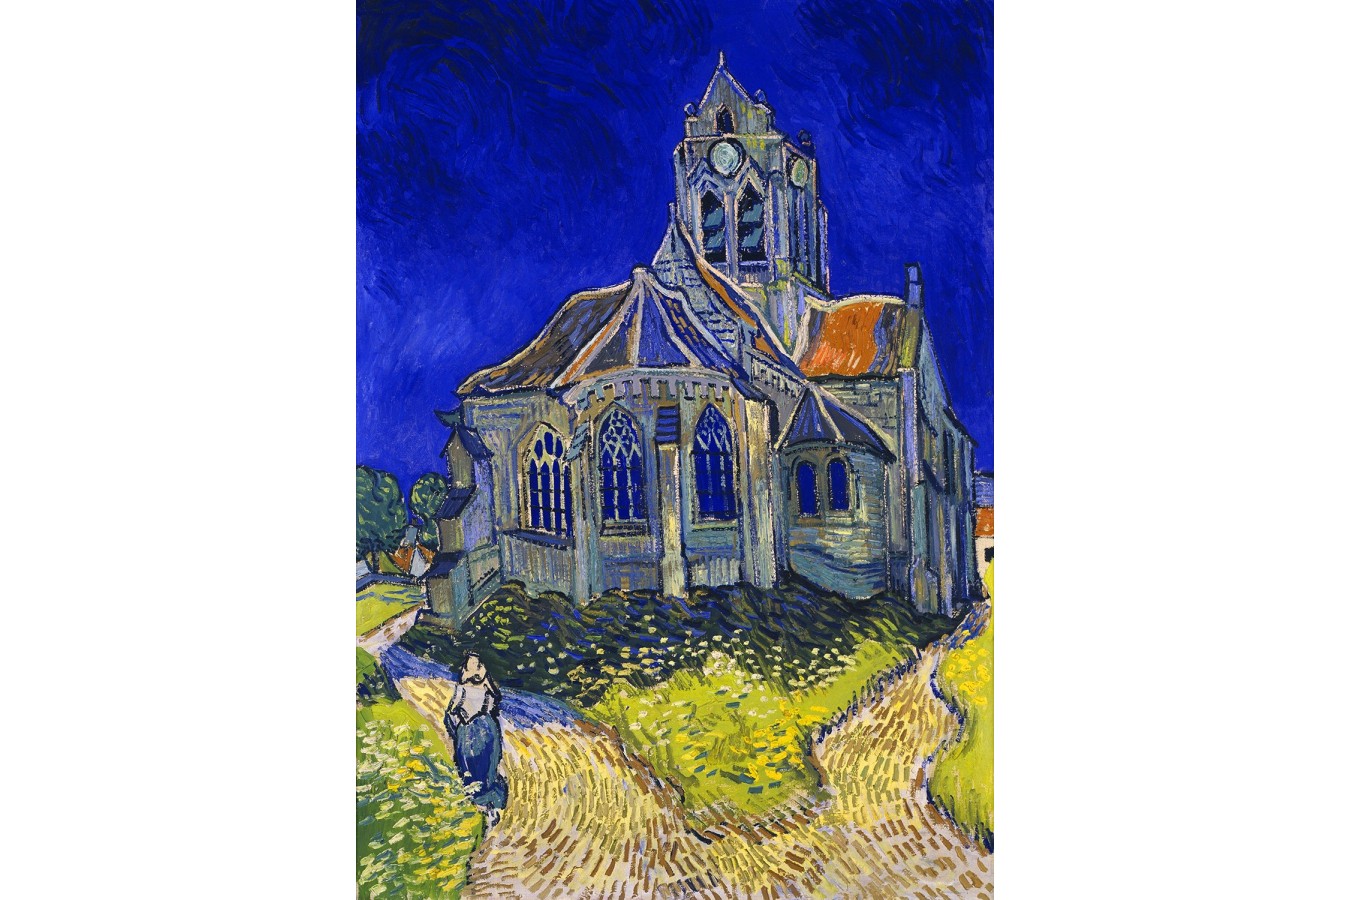 Puzzle 1000 piese Enjoy - Vincent Van Gogh: The Church in Auvers-sur-Oise (Enjoy-1152)